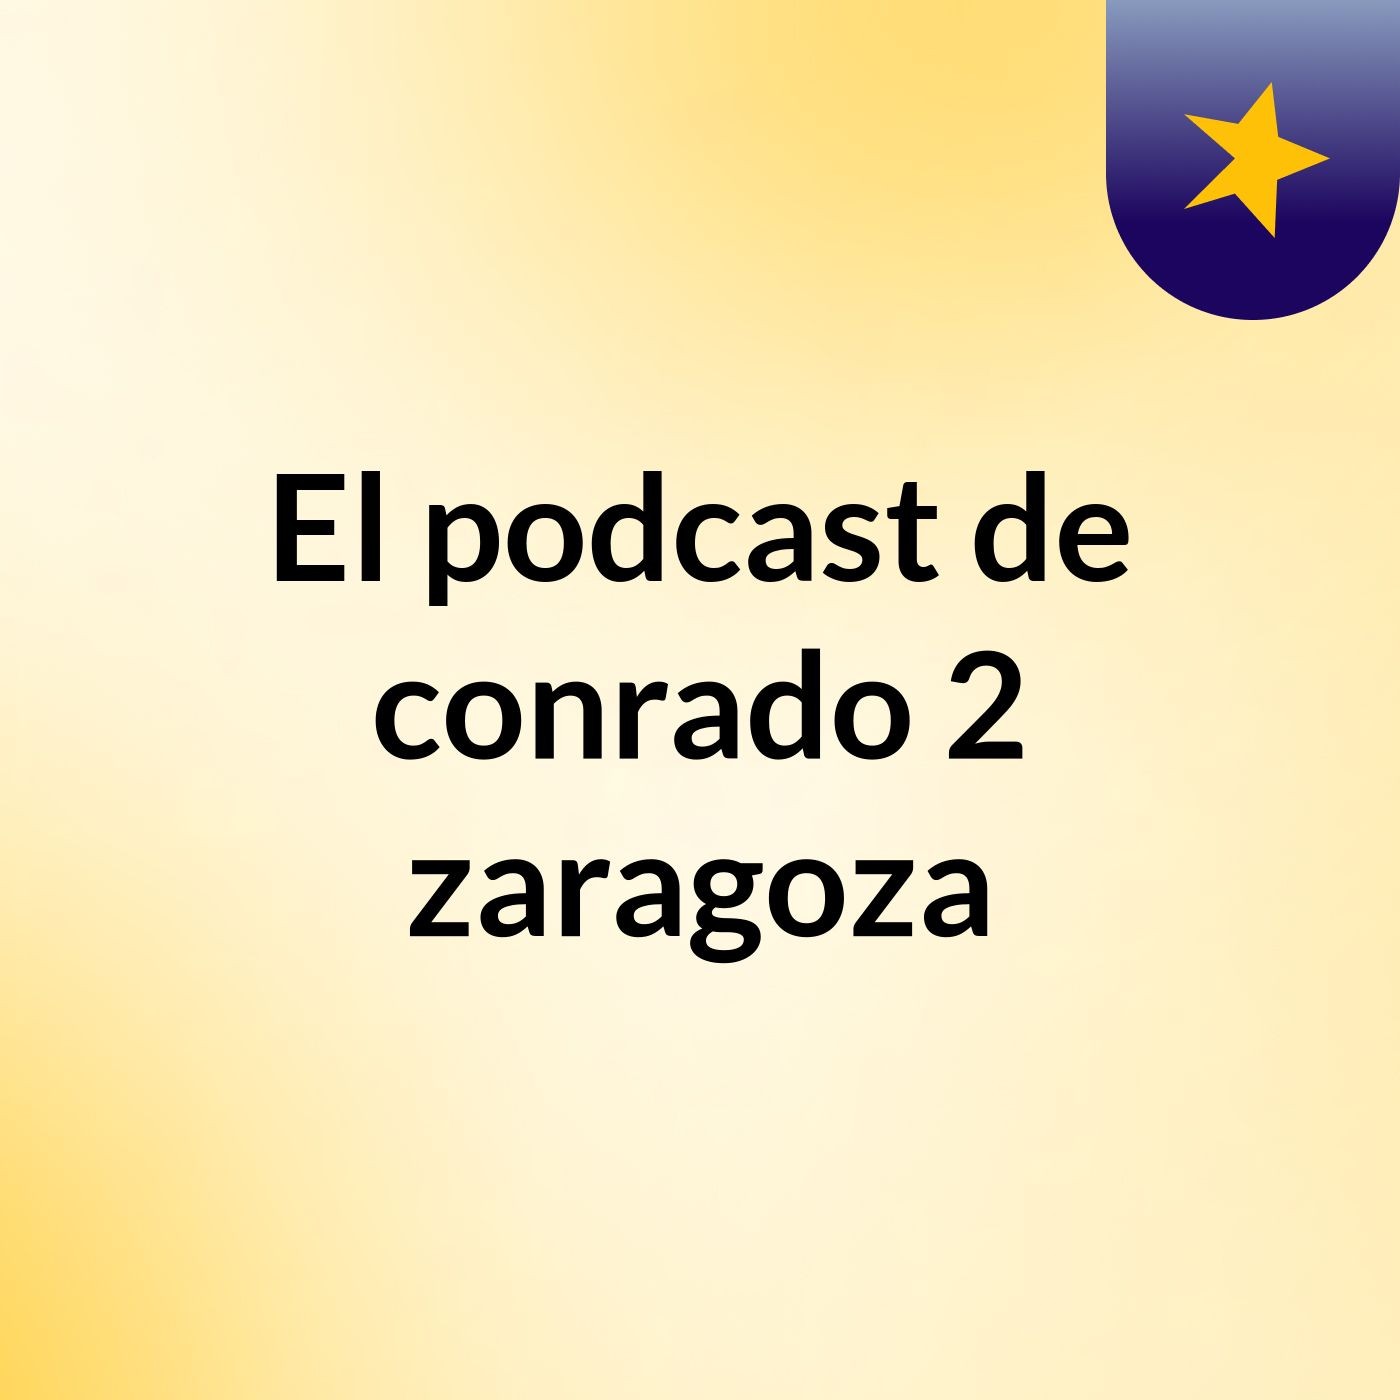 El podcast de conrado 2 zaragoza